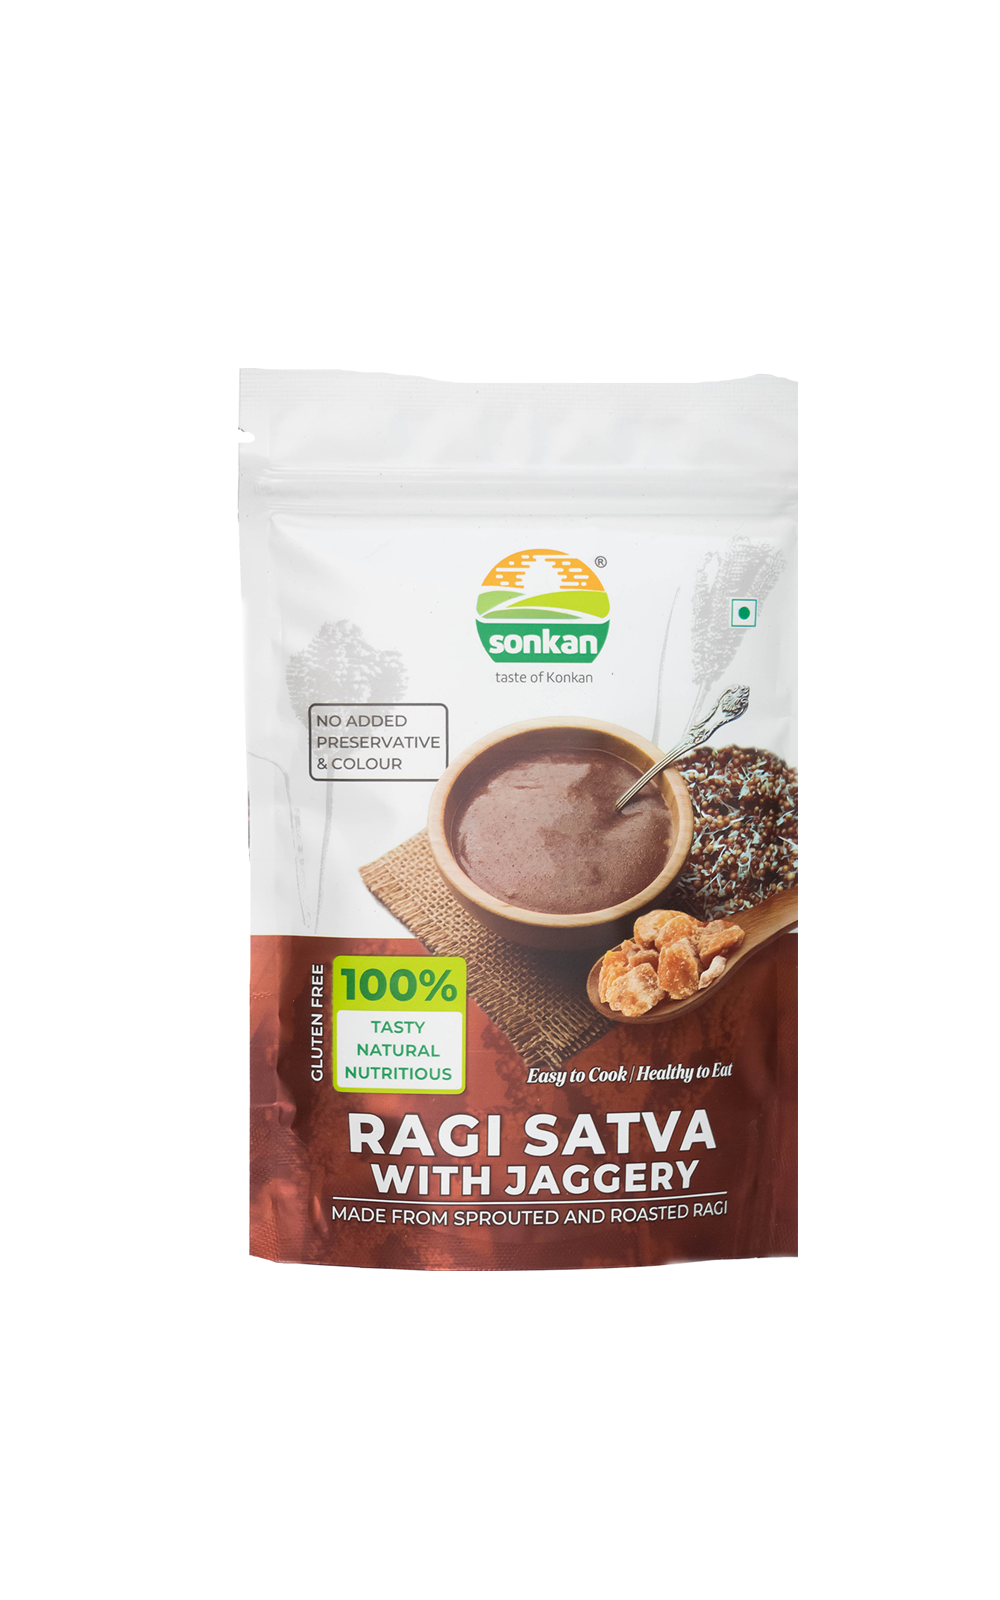 Ragi Satva with Jaggery